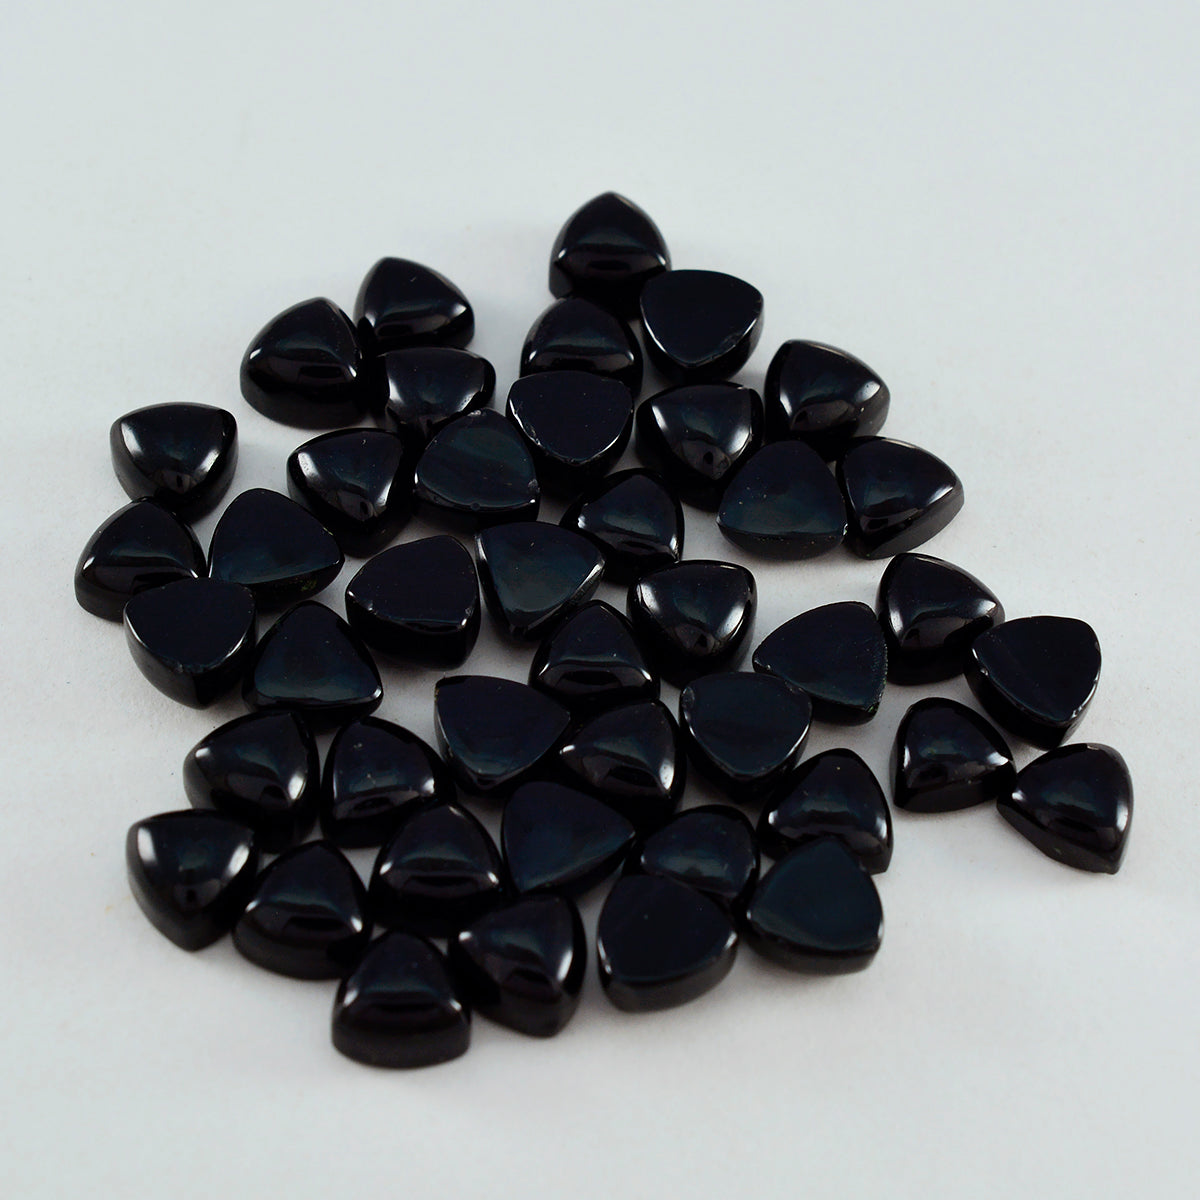 Riyogems 1 cabujón de ónix negro, 0.236 x 0.236 in, forma de billón, una piedra preciosa suelta de calidad